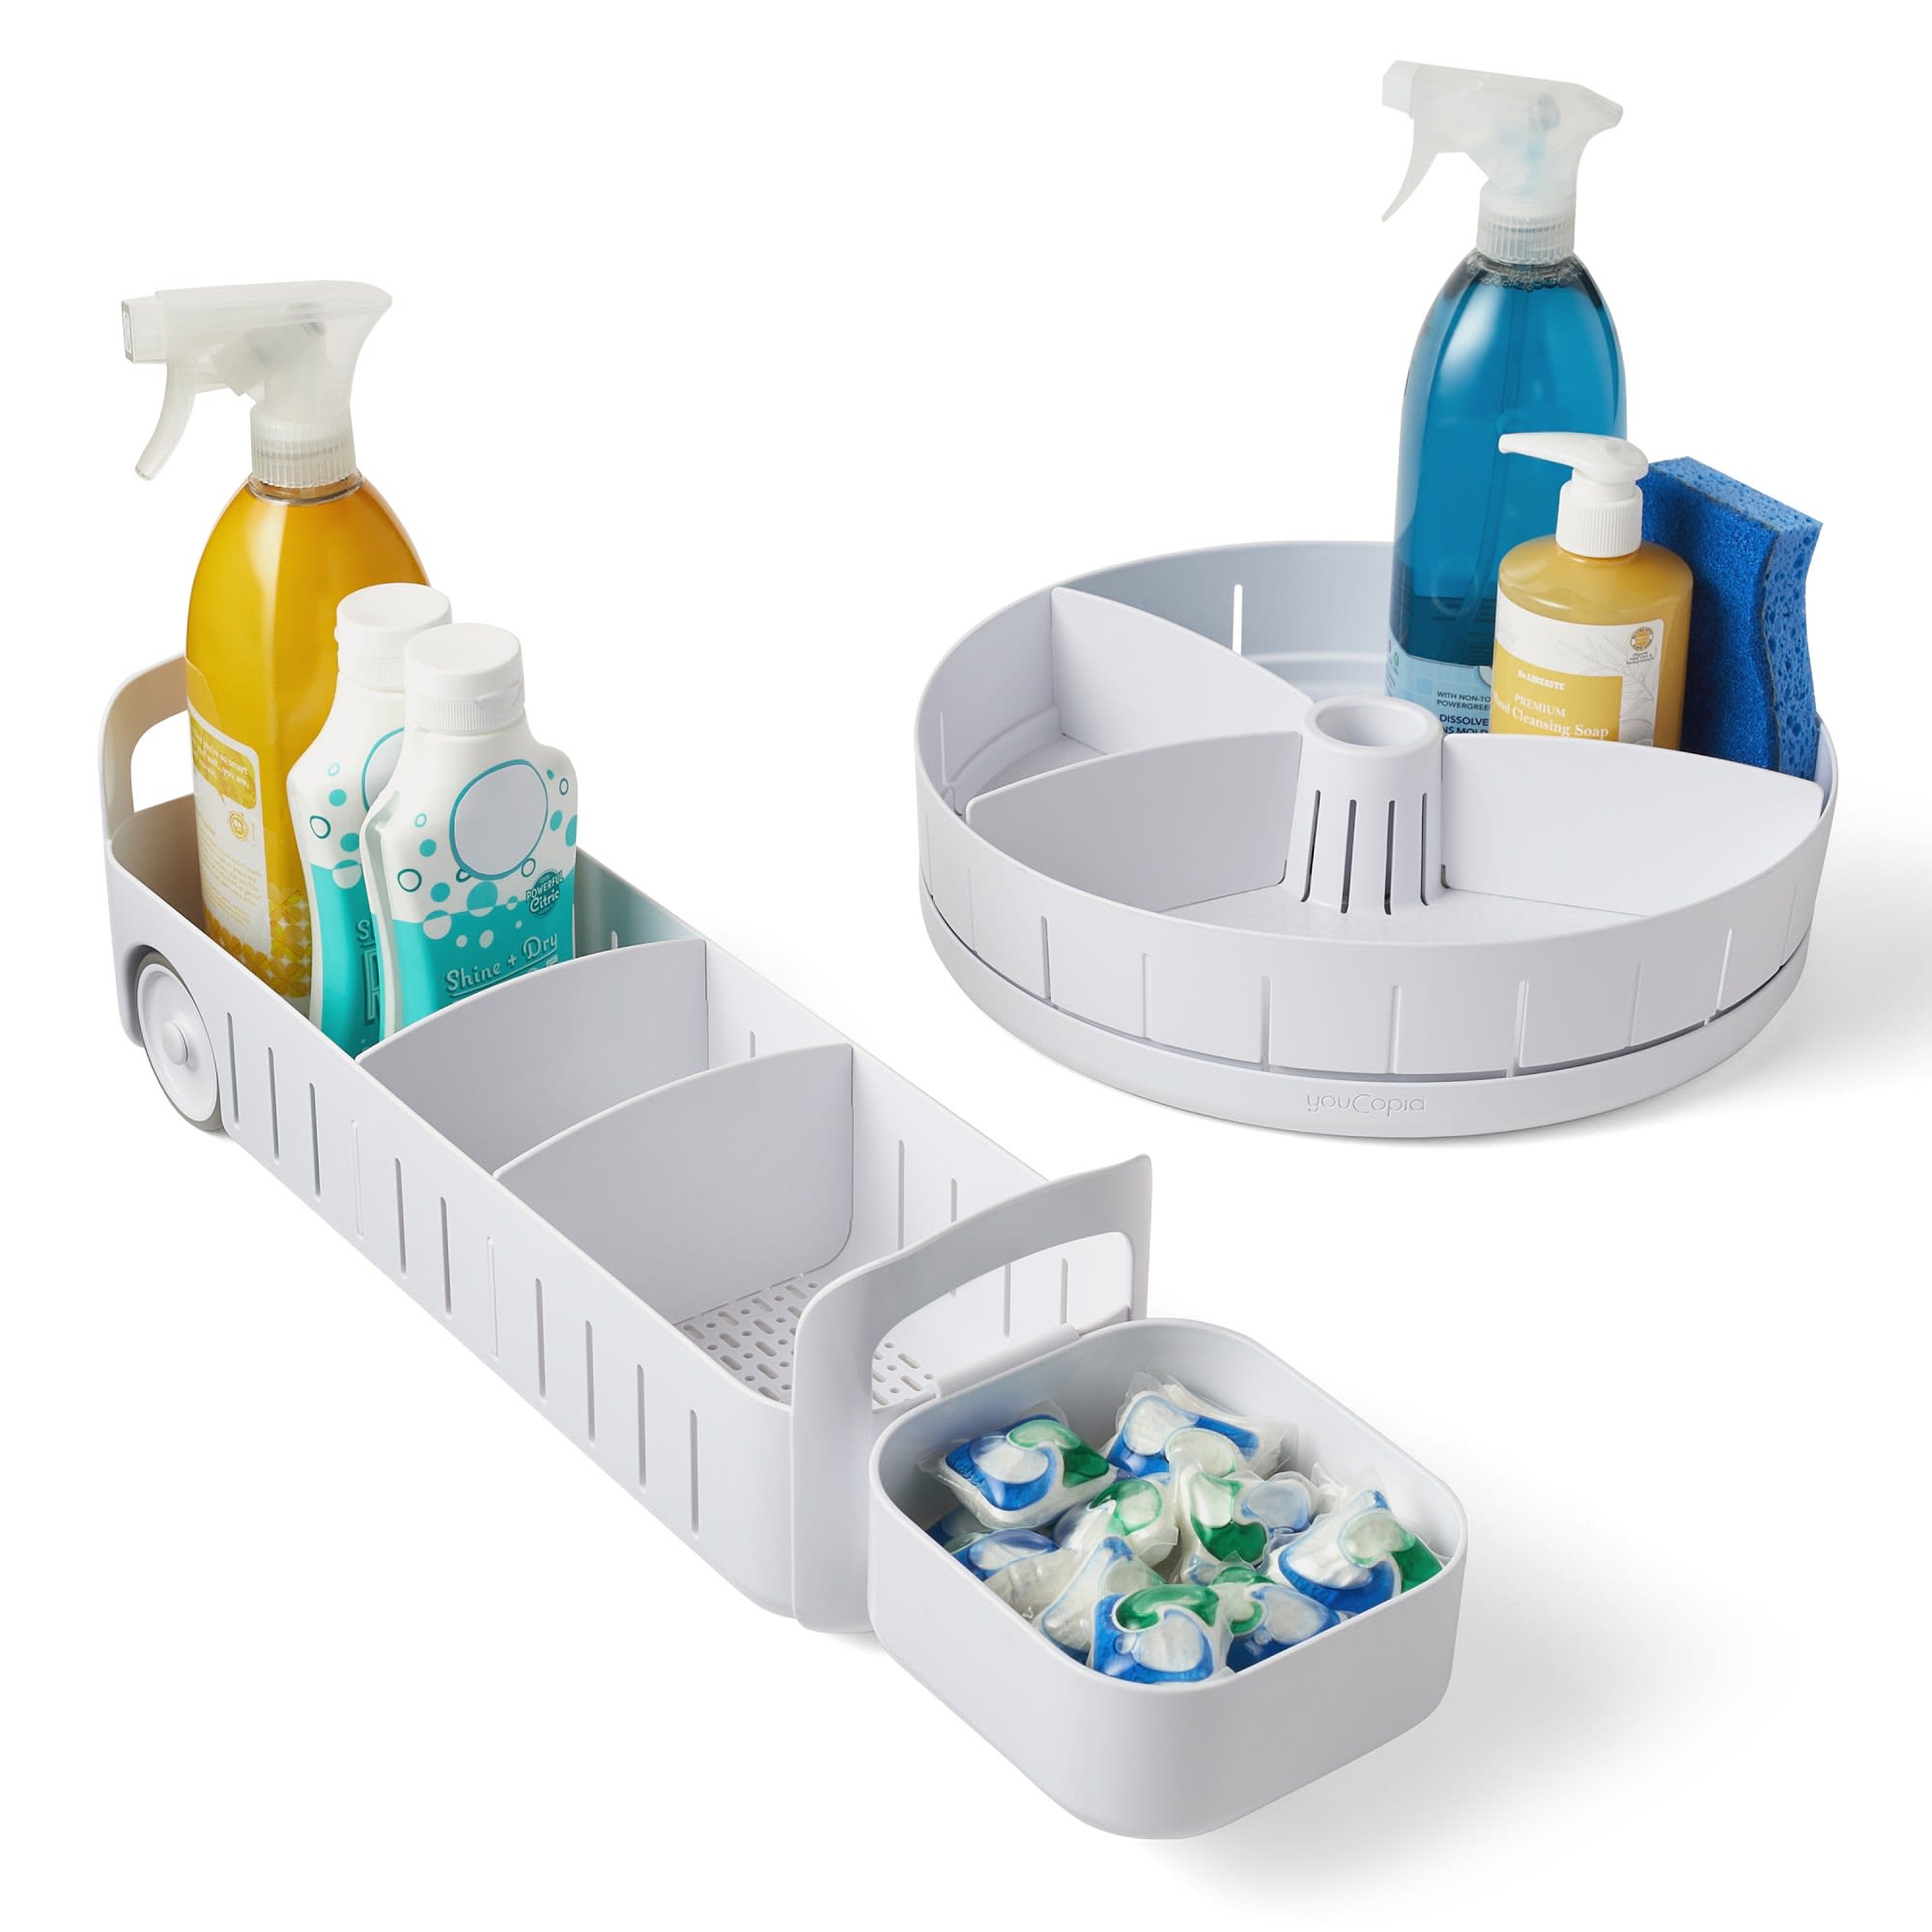  Polder Under Sink Cleaning Supplies Organizer/Storage